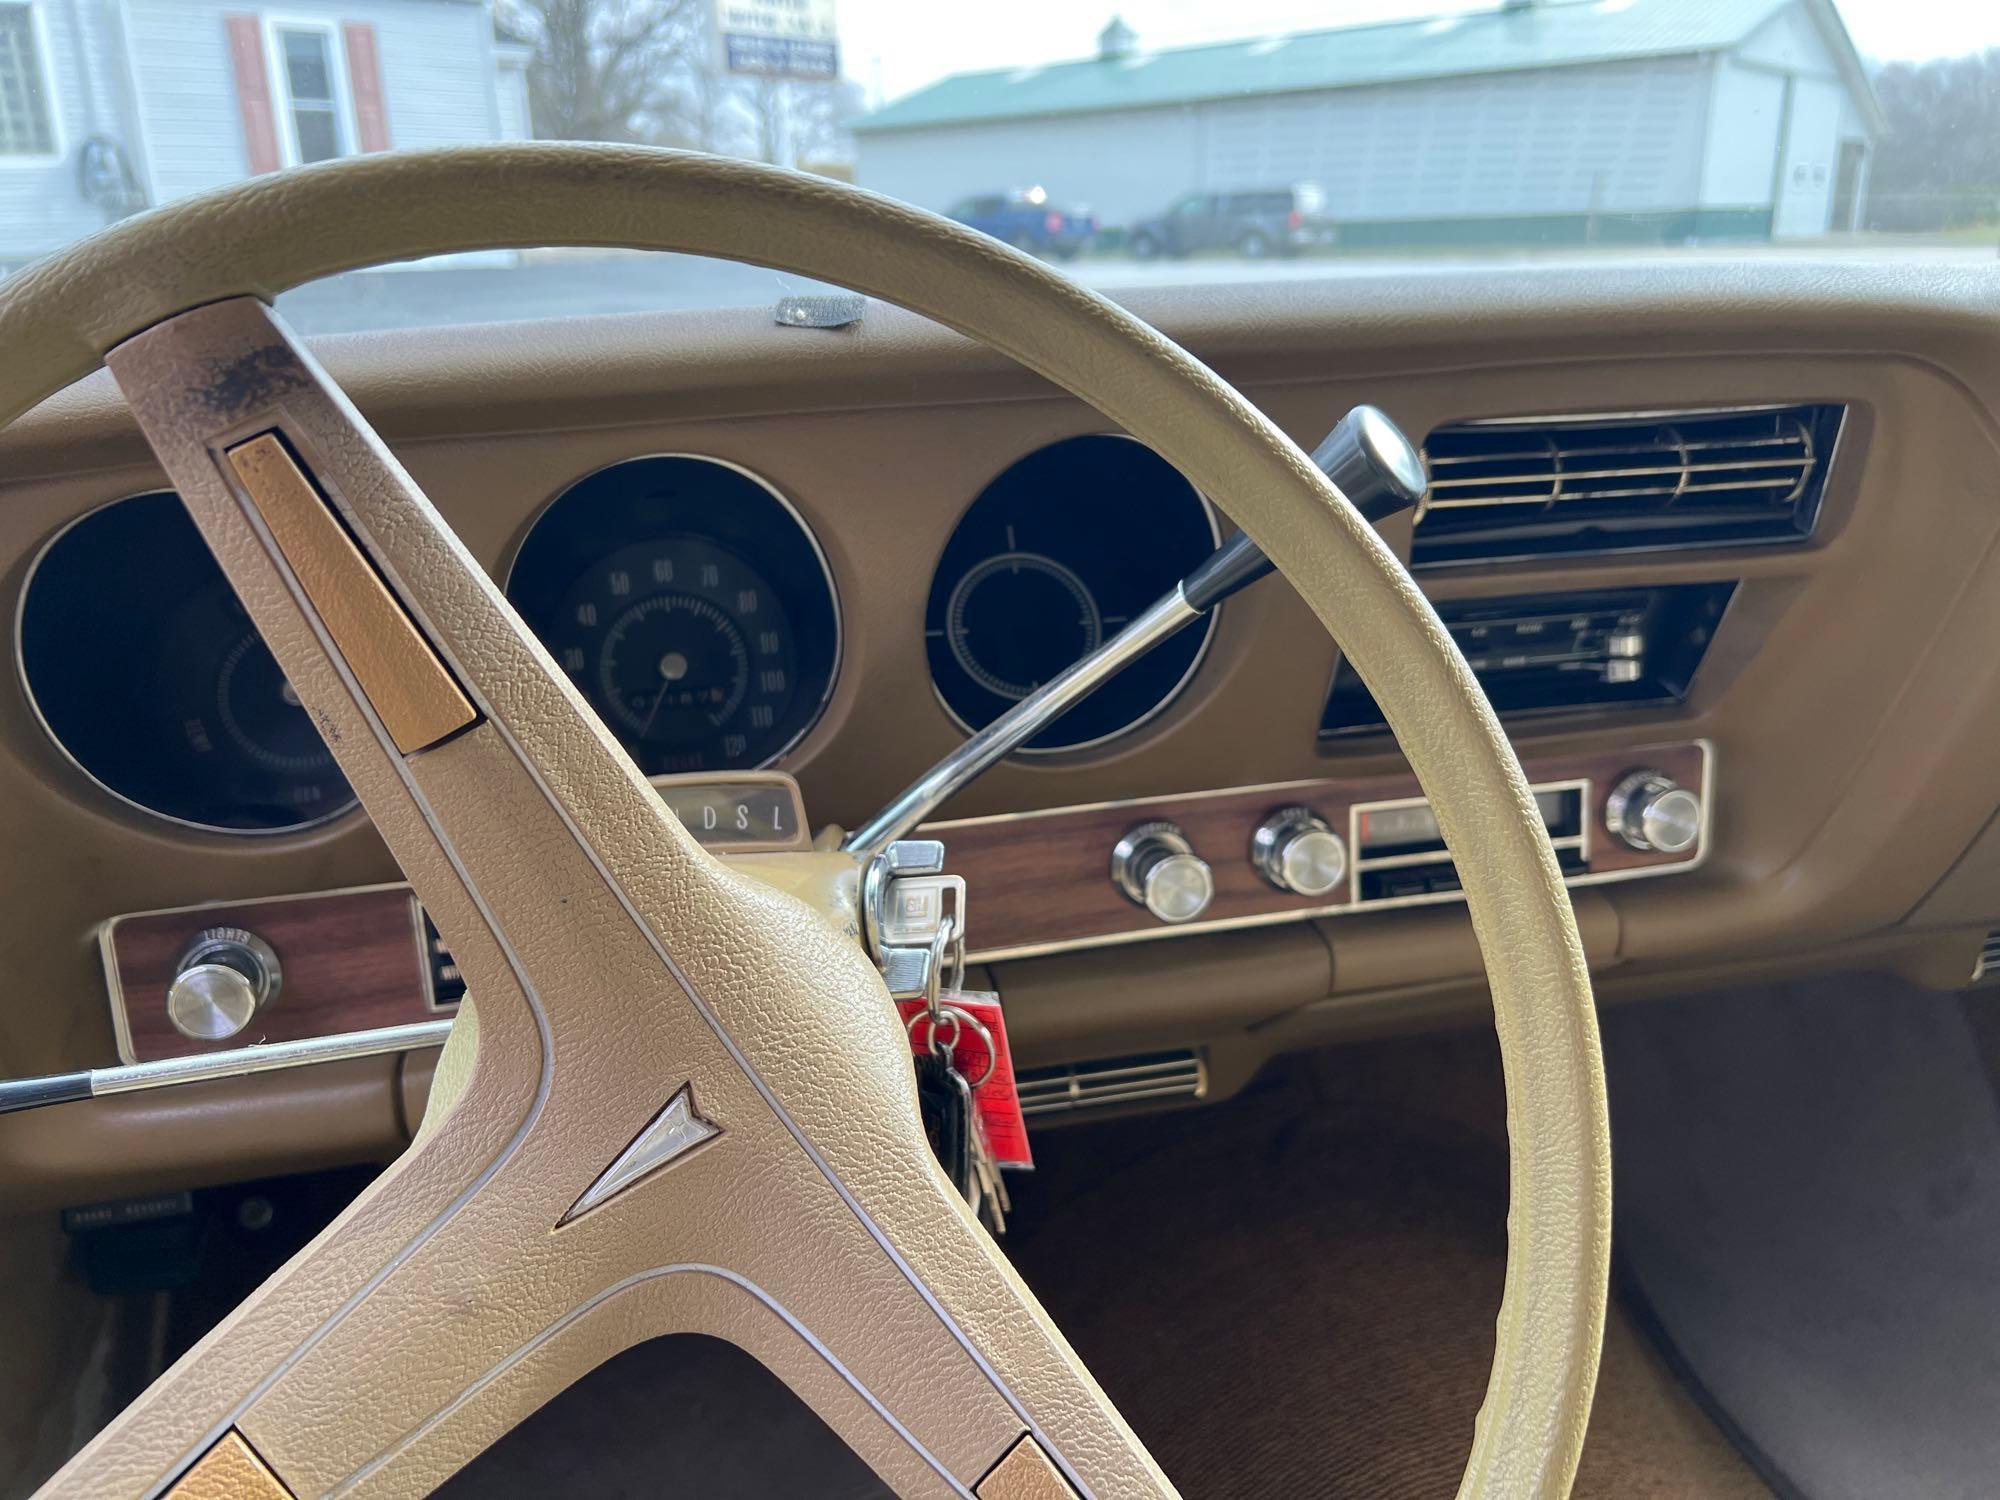 1969 Pontiac Tempest Custom S